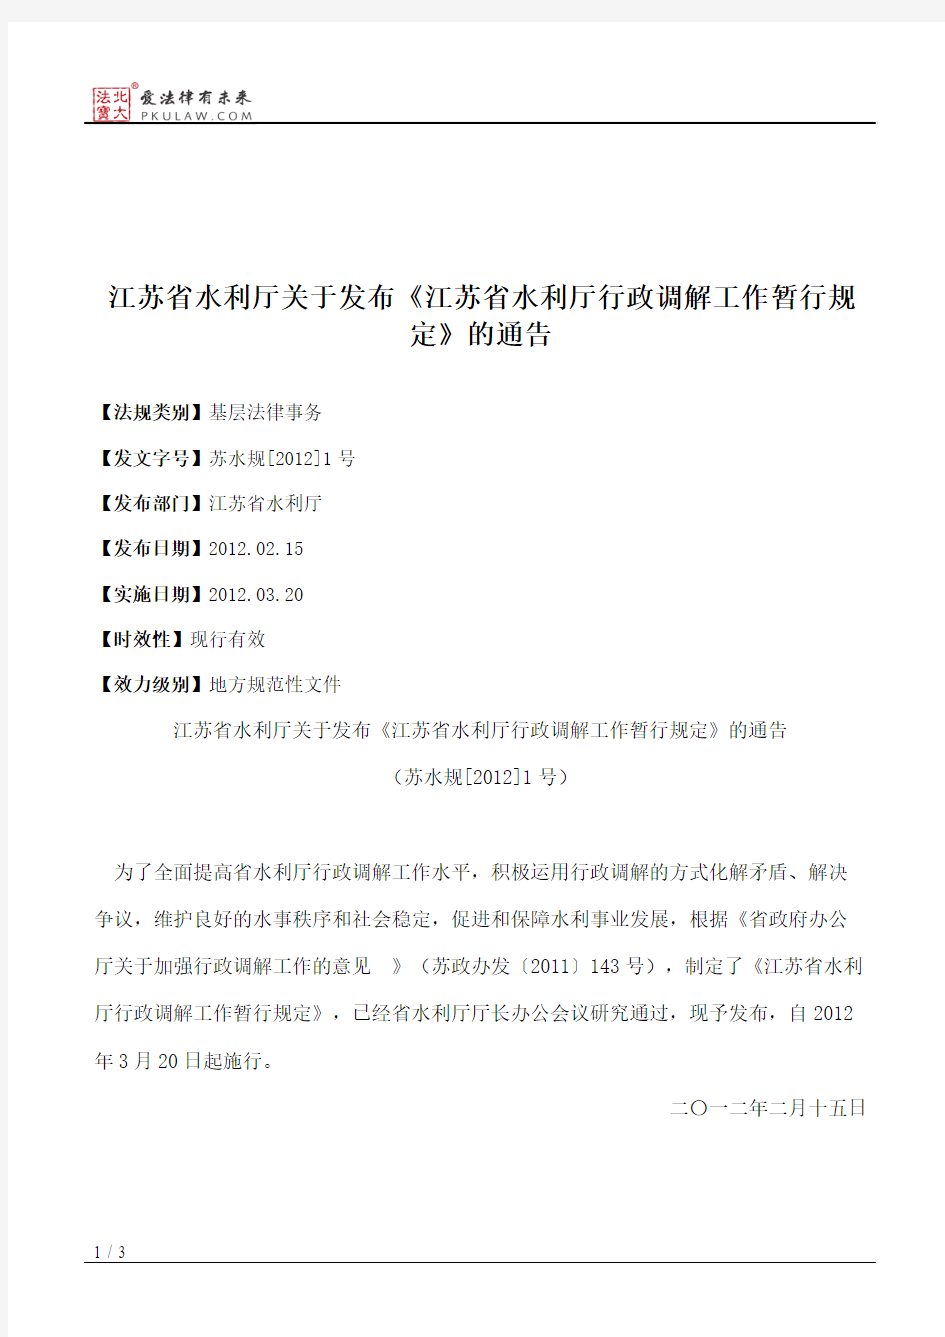 江苏省水利厅关于发布《江苏省水利厅行政调解工作暂行规定》的通告